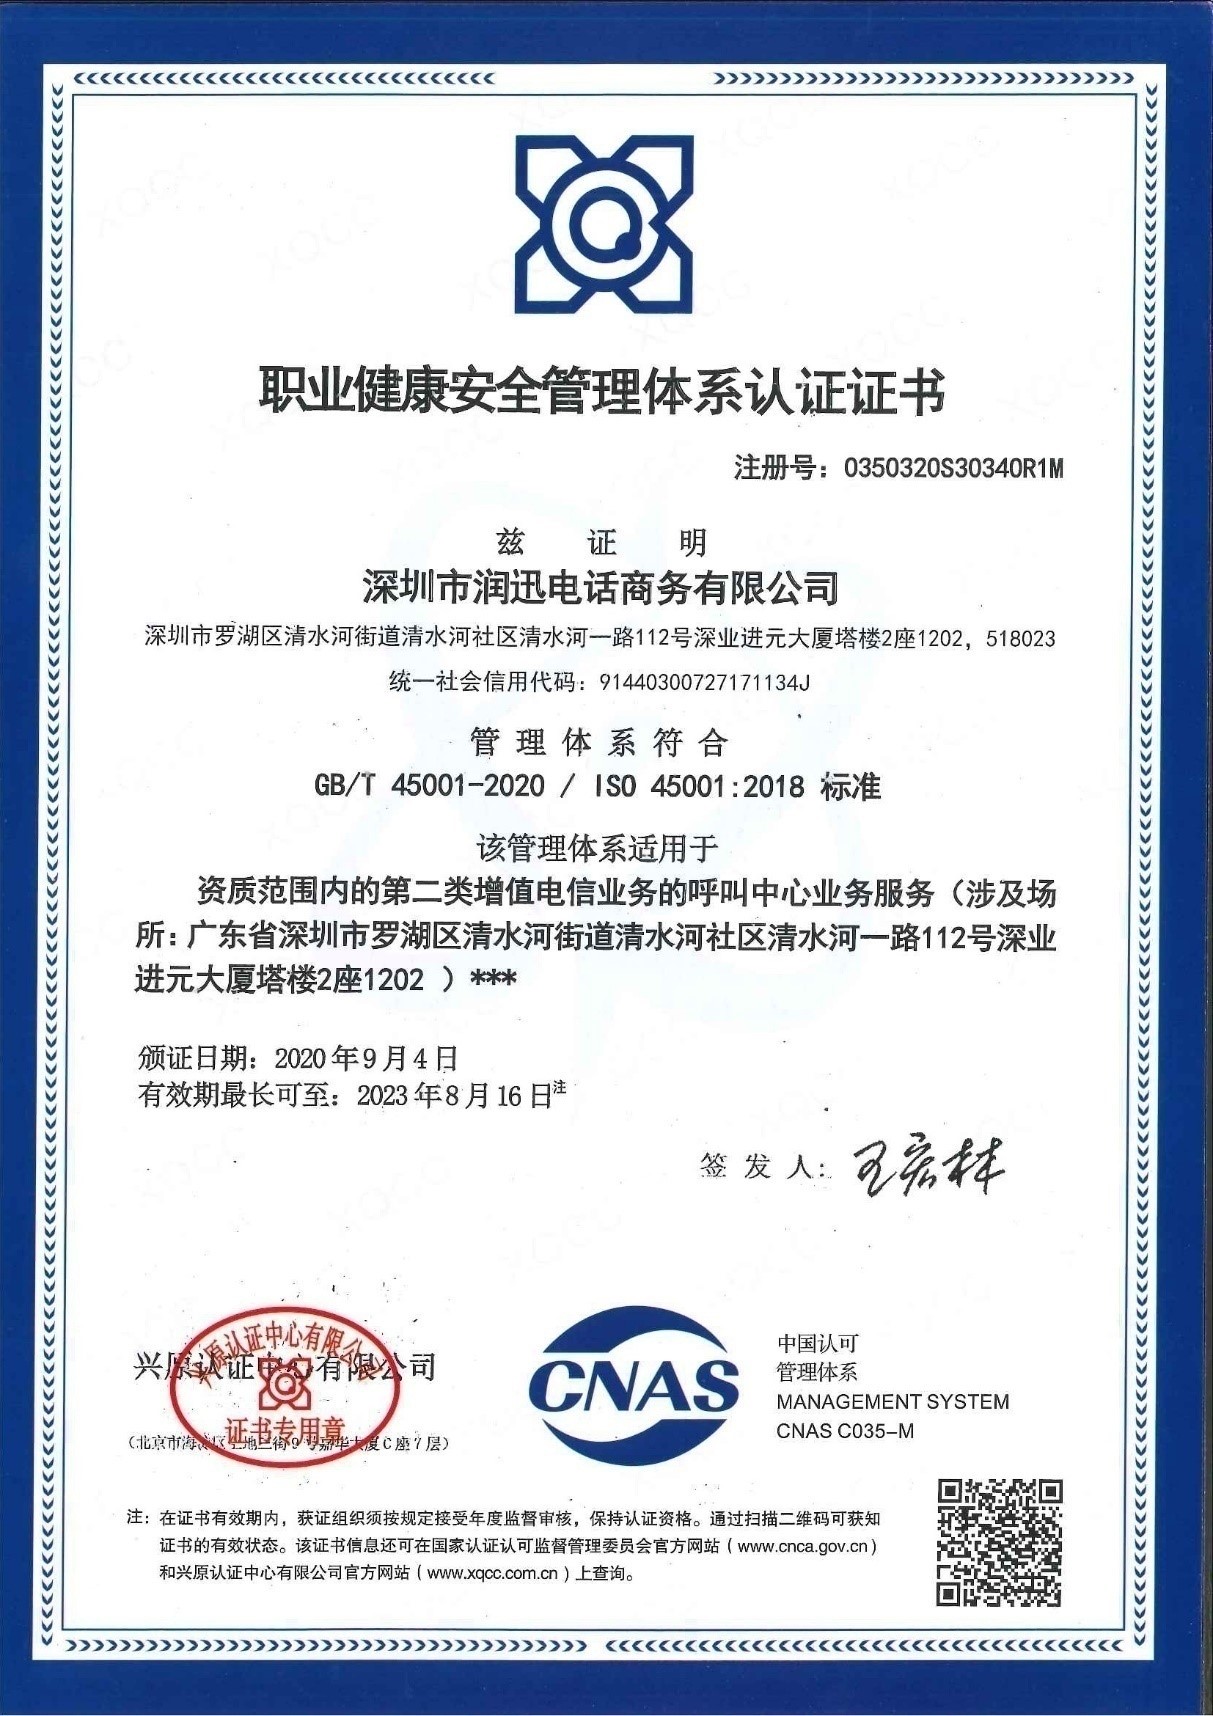 星空体育职业健康安全管理体系认证证书